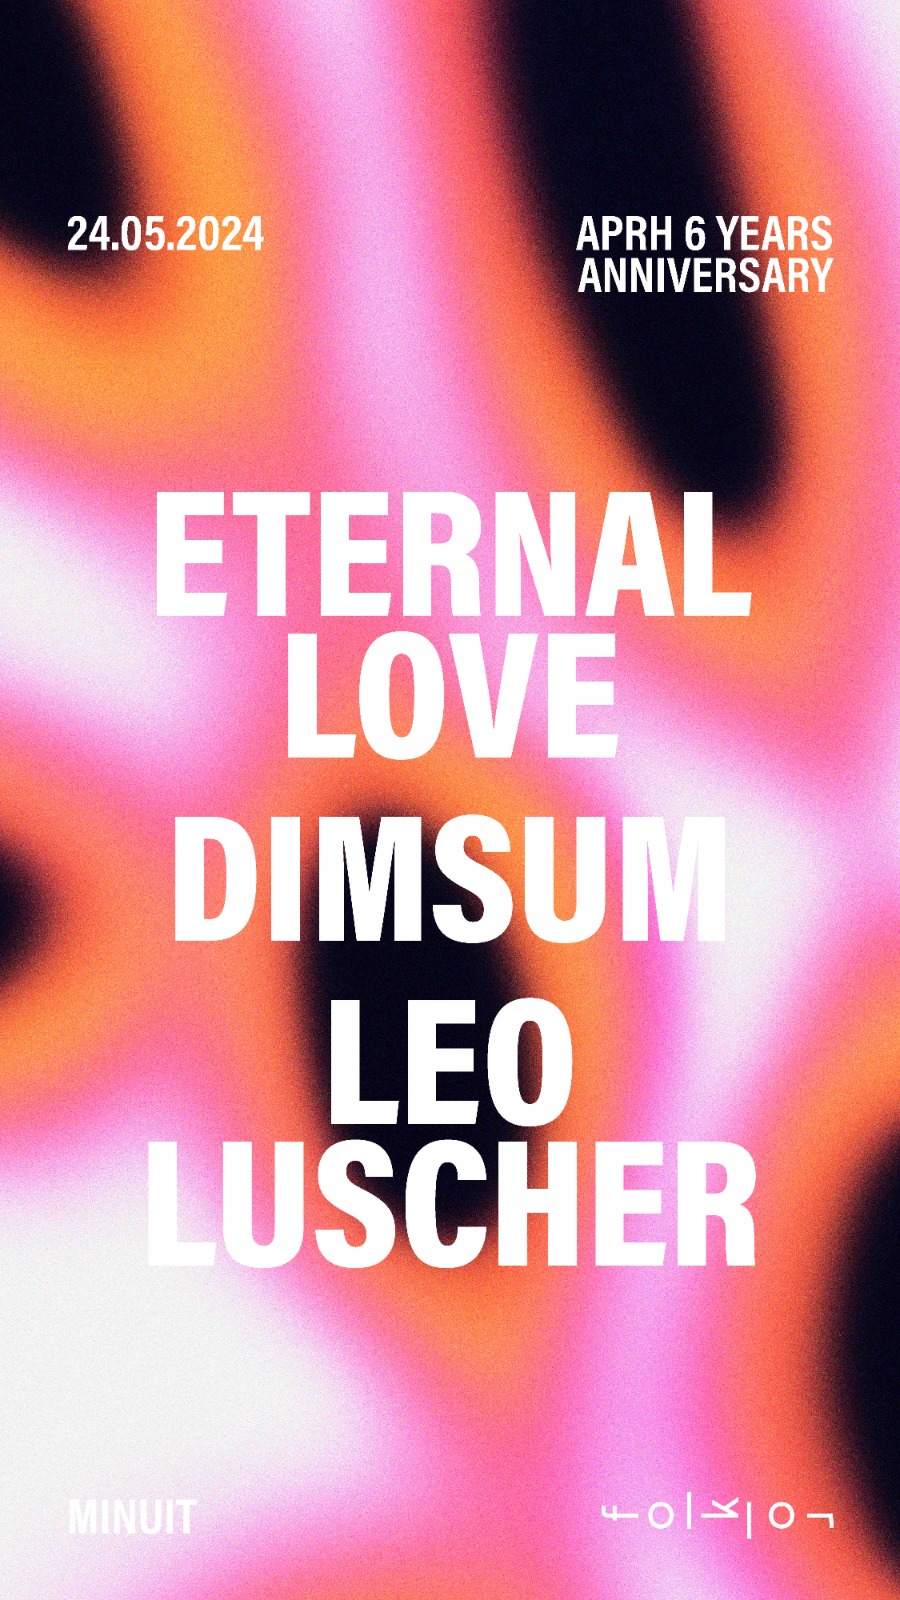 APRH 6 Years Anniversary /// Eternal Love - DimSum - Leo Luscher - フライヤー表